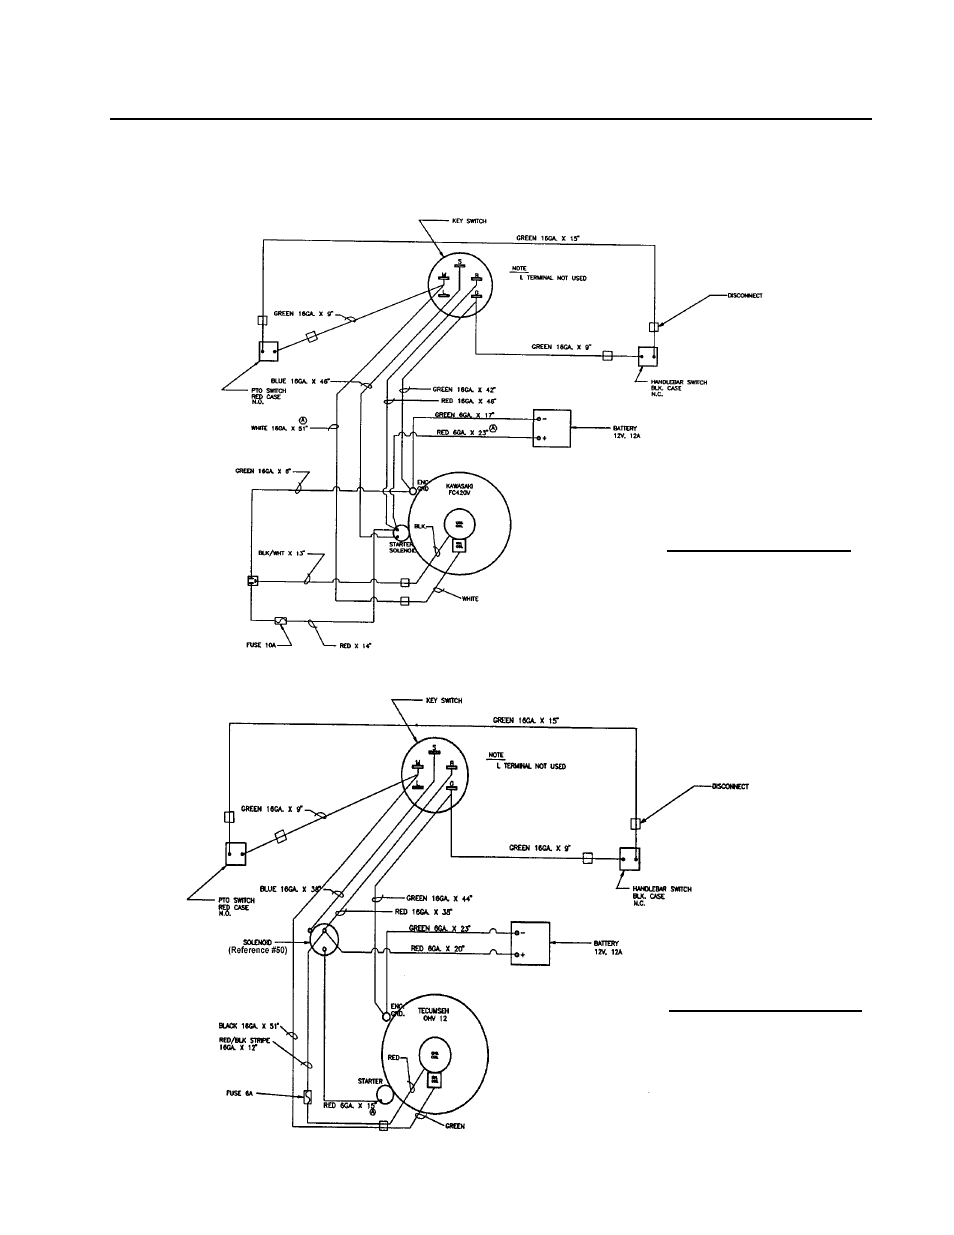 Wiring diagrams | DR Power Walk-behind 8 - 15 HP (1998 - 2001) User